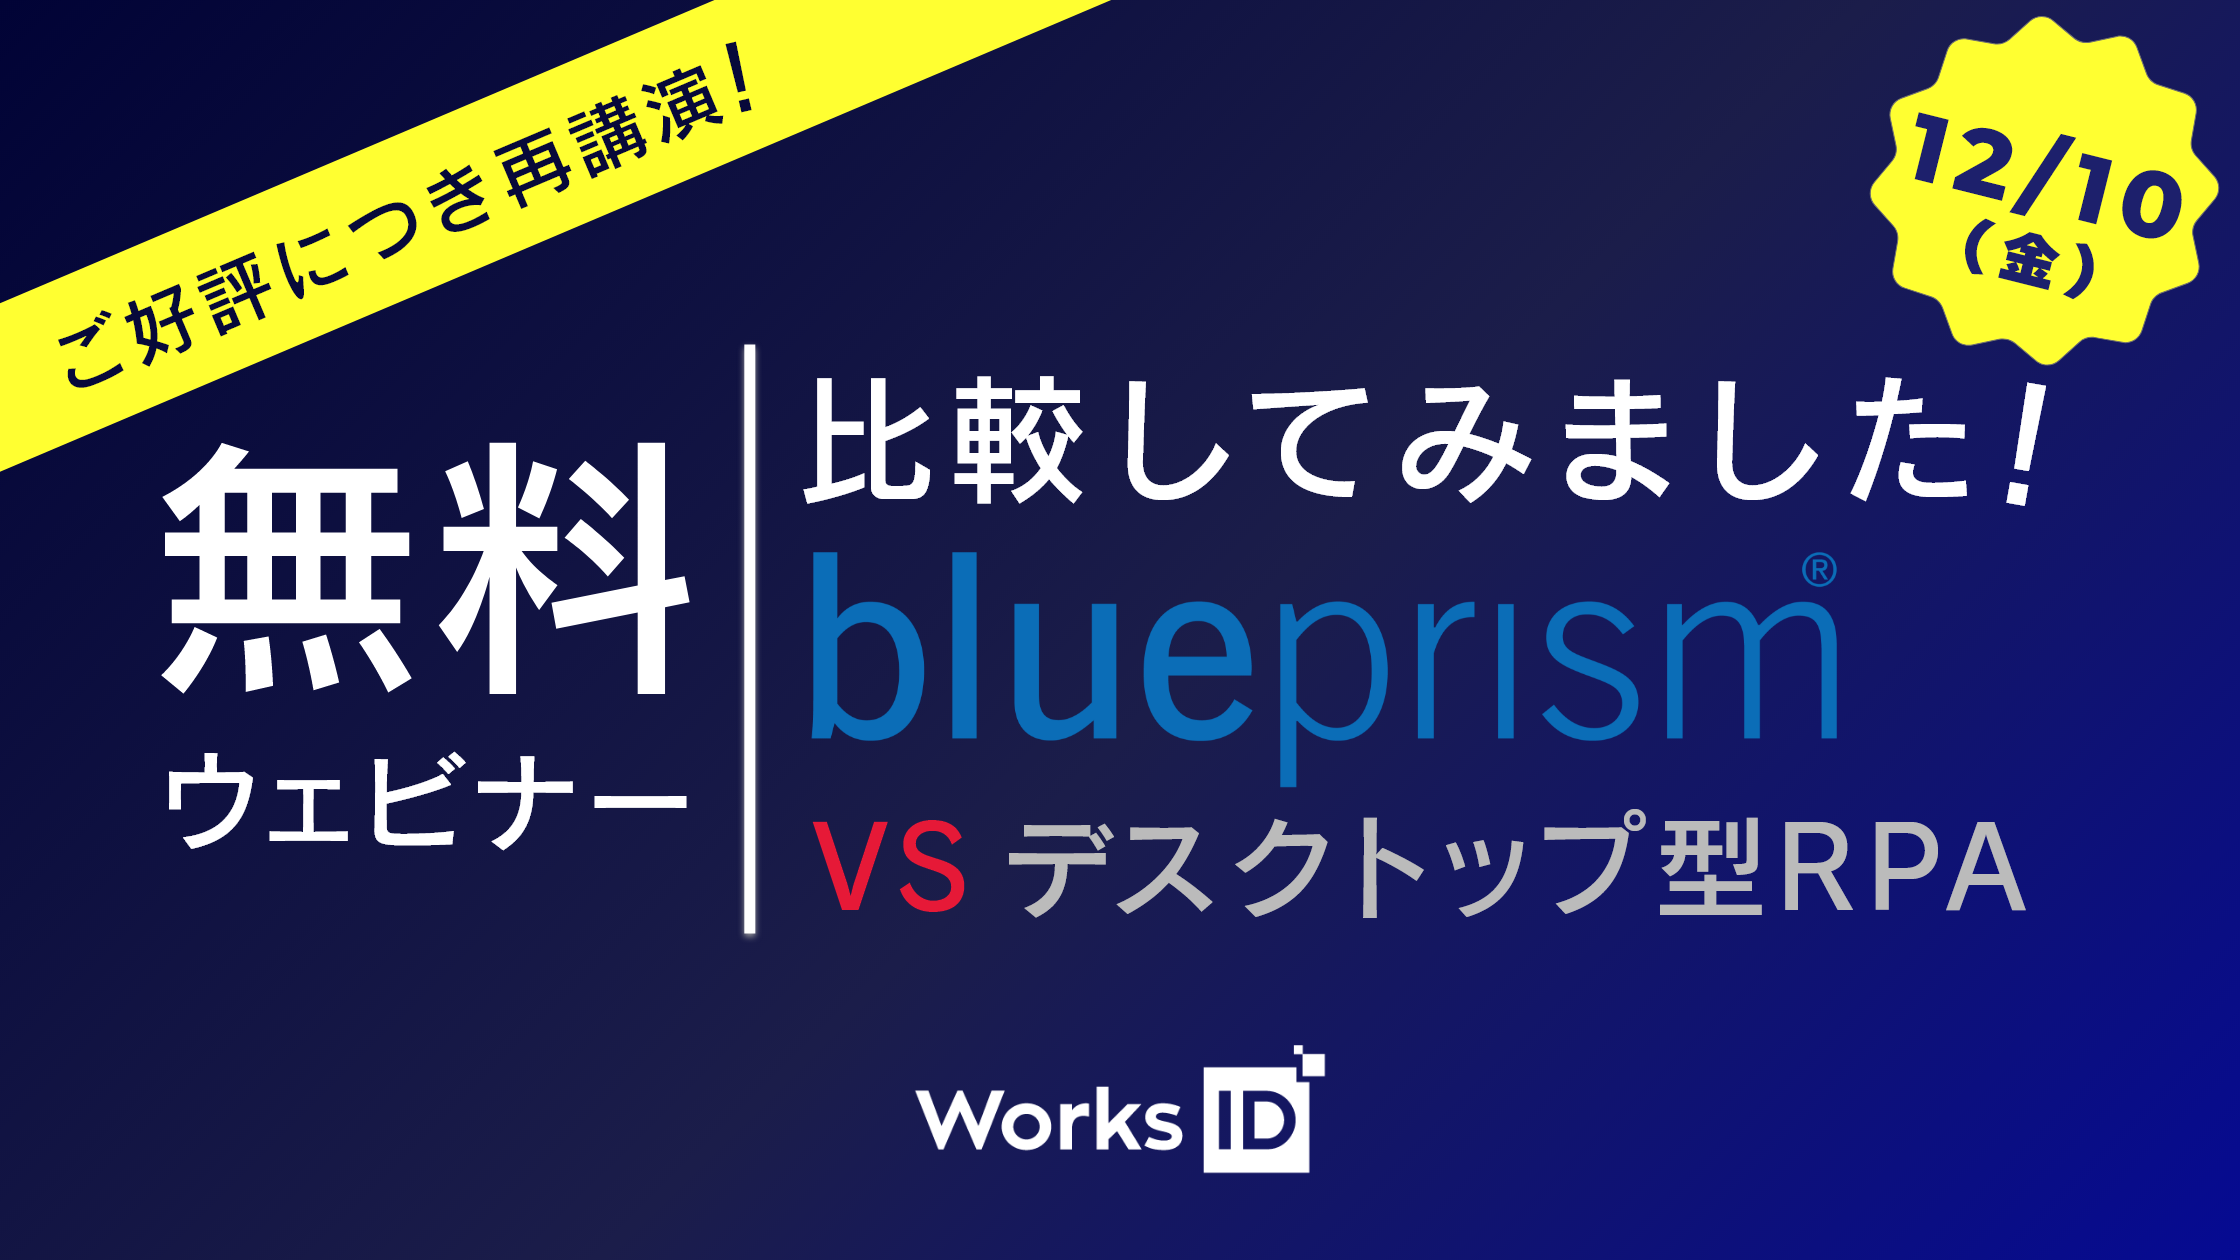 12/10（金）『比較してみました！BluePrism VS デスクトップ型RPA』無料ウェビナー再講演！